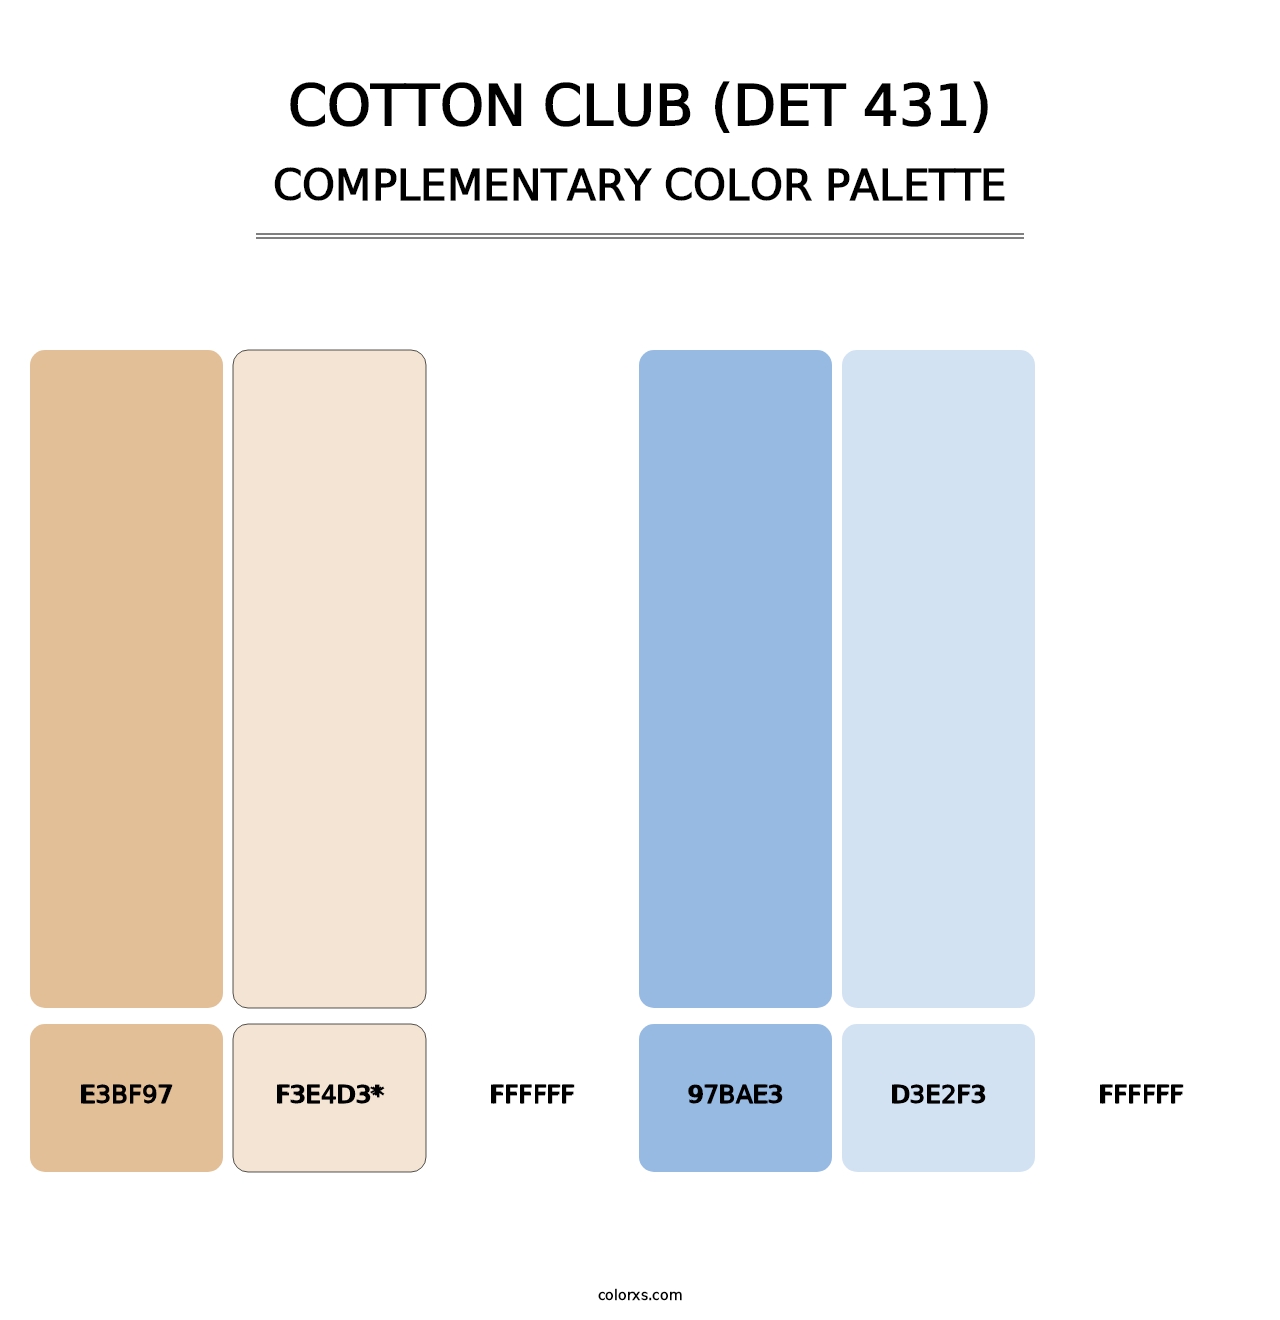 Cotton Club (DET 431) - Complementary Color Palette